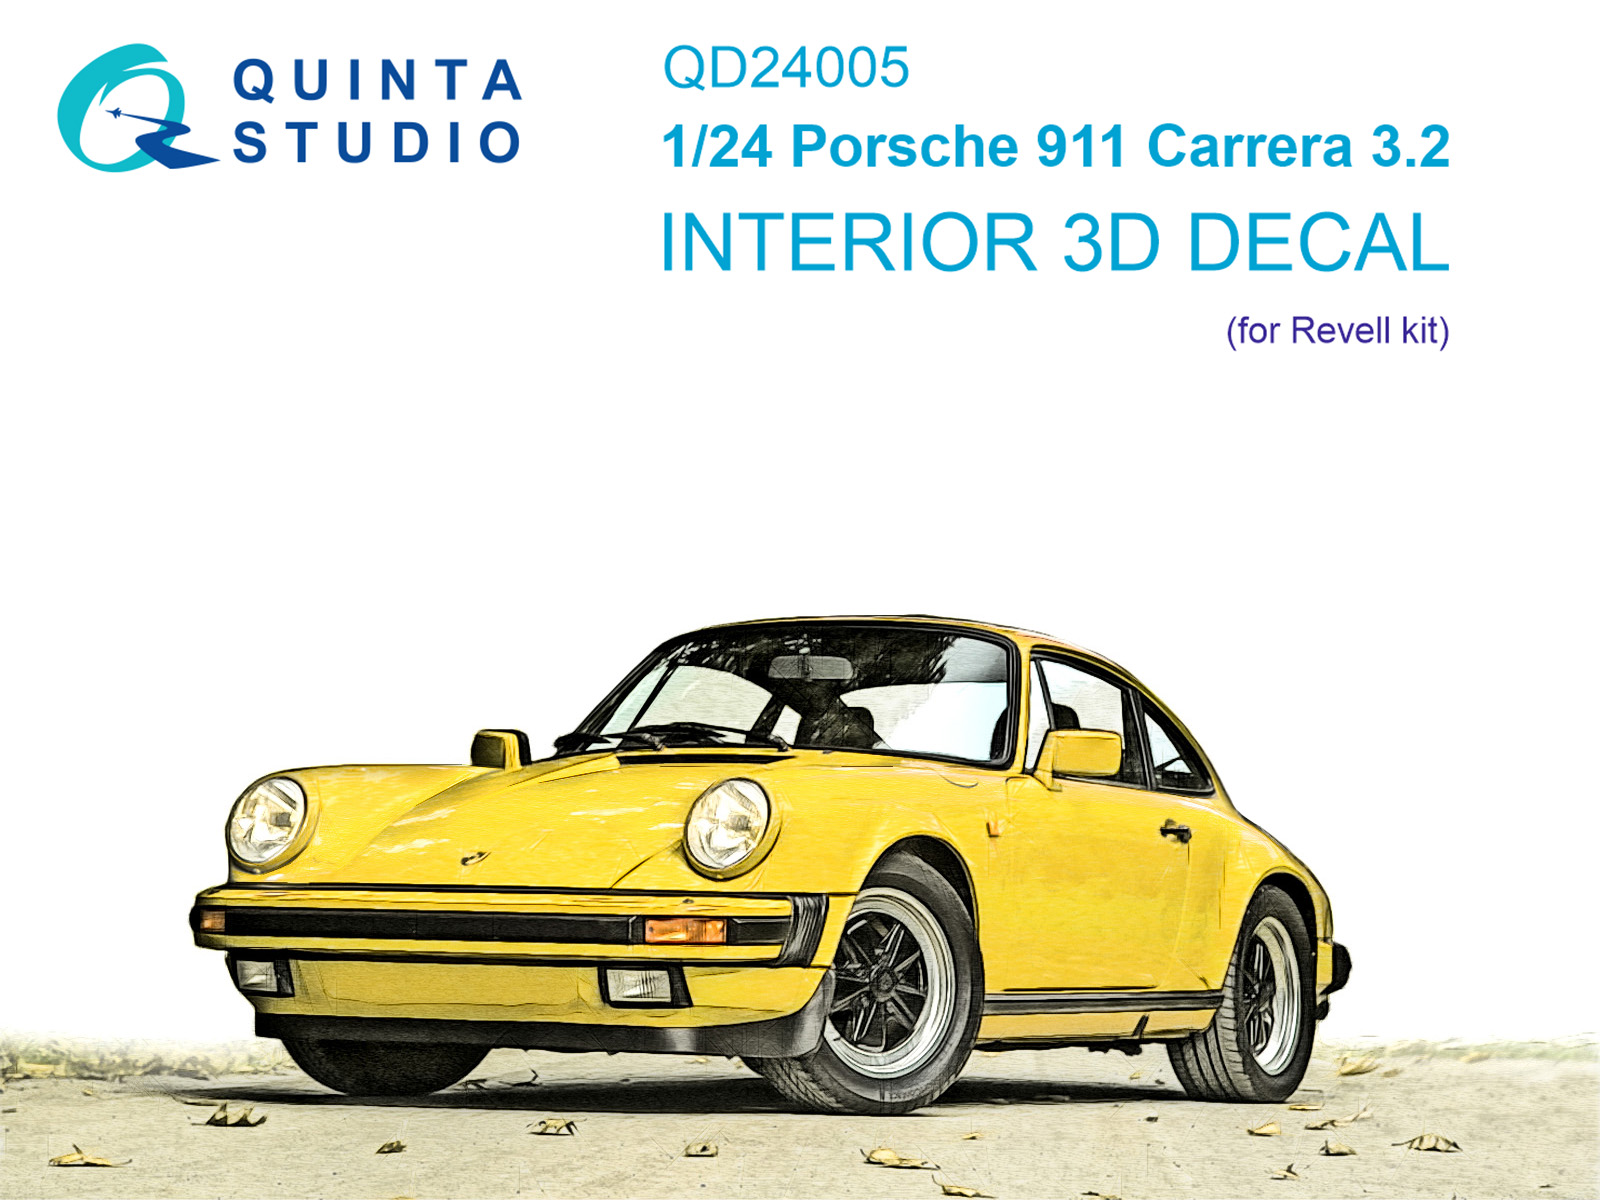 QD24005  декали 3D Декаль интерьера кабины  Porsche 911 Carrera 3.2 (Revell)  (1:24)